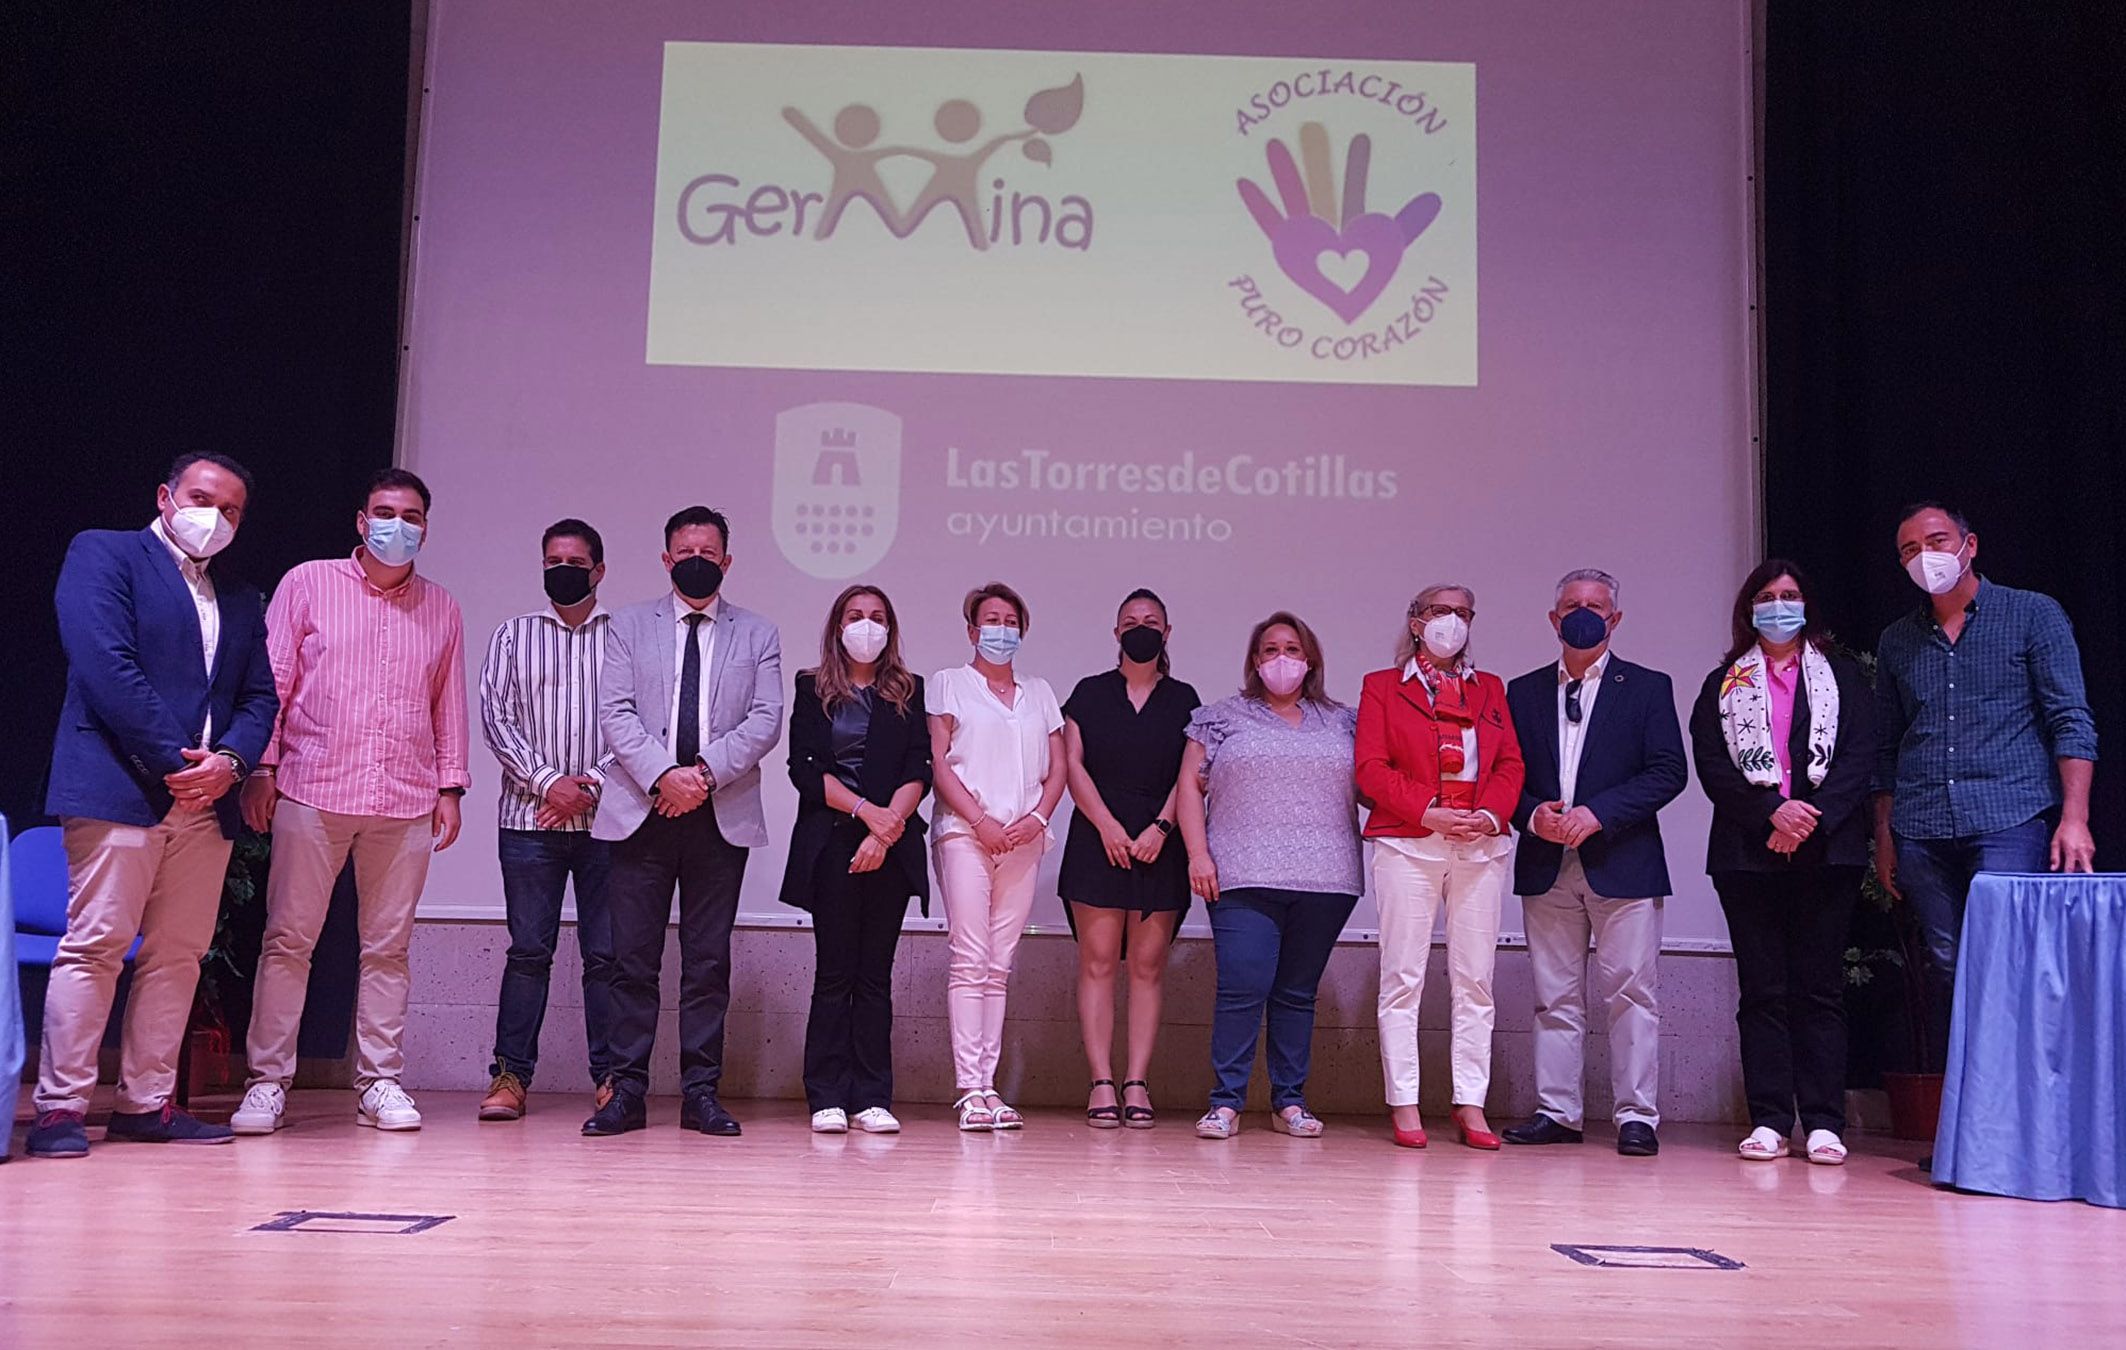 Se presenta el proyecto “Germina” que apoyará con atención multidisciplinar a la comunidad educativa de Las Torres de Cotillas6